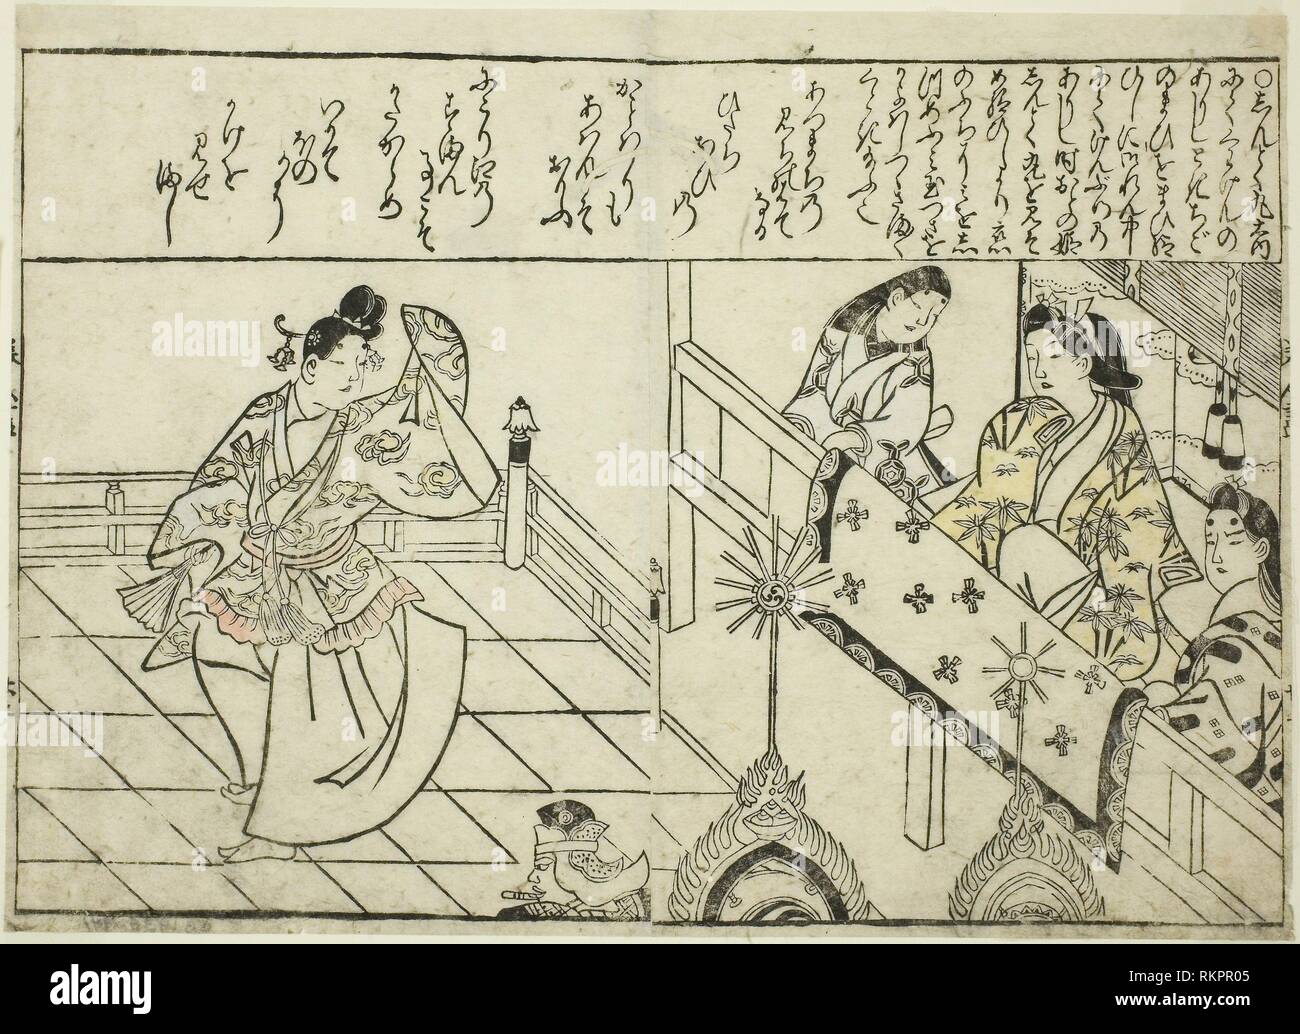 Shintokumaru tanzen vor dem Oto Hime, aus dem Bildband "Sammlung von Bilder von Schönheiten (Bijin e-zukushi)''-C. 1683 - Hishikawa Stockfoto